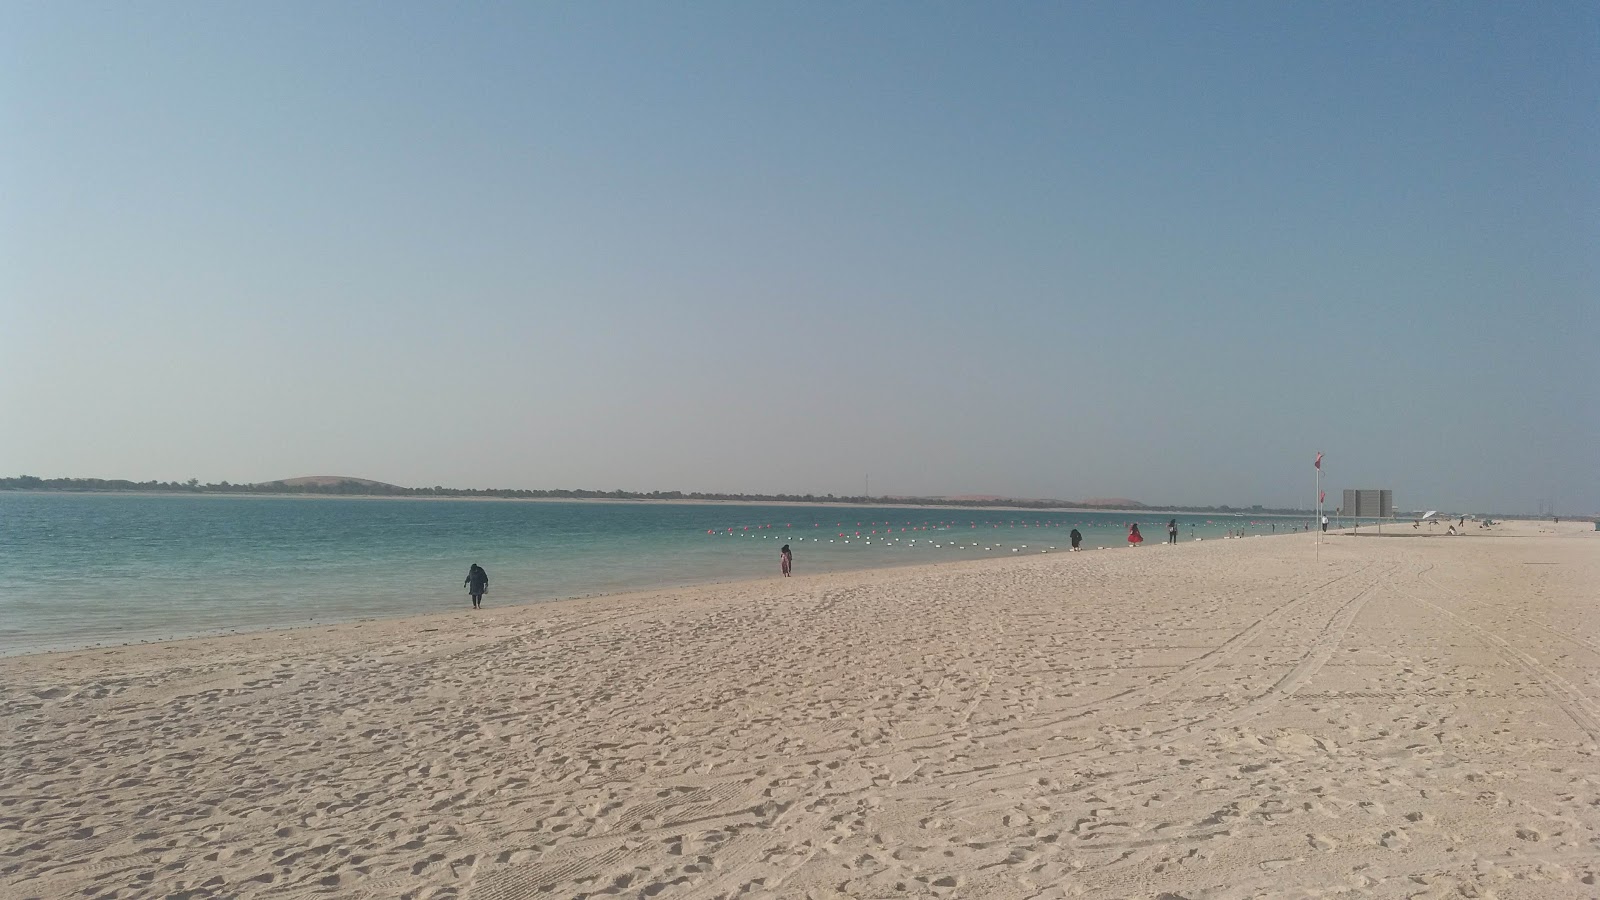 Abu Dhabi beach'in fotoğrafı turkuaz saf su yüzey ile